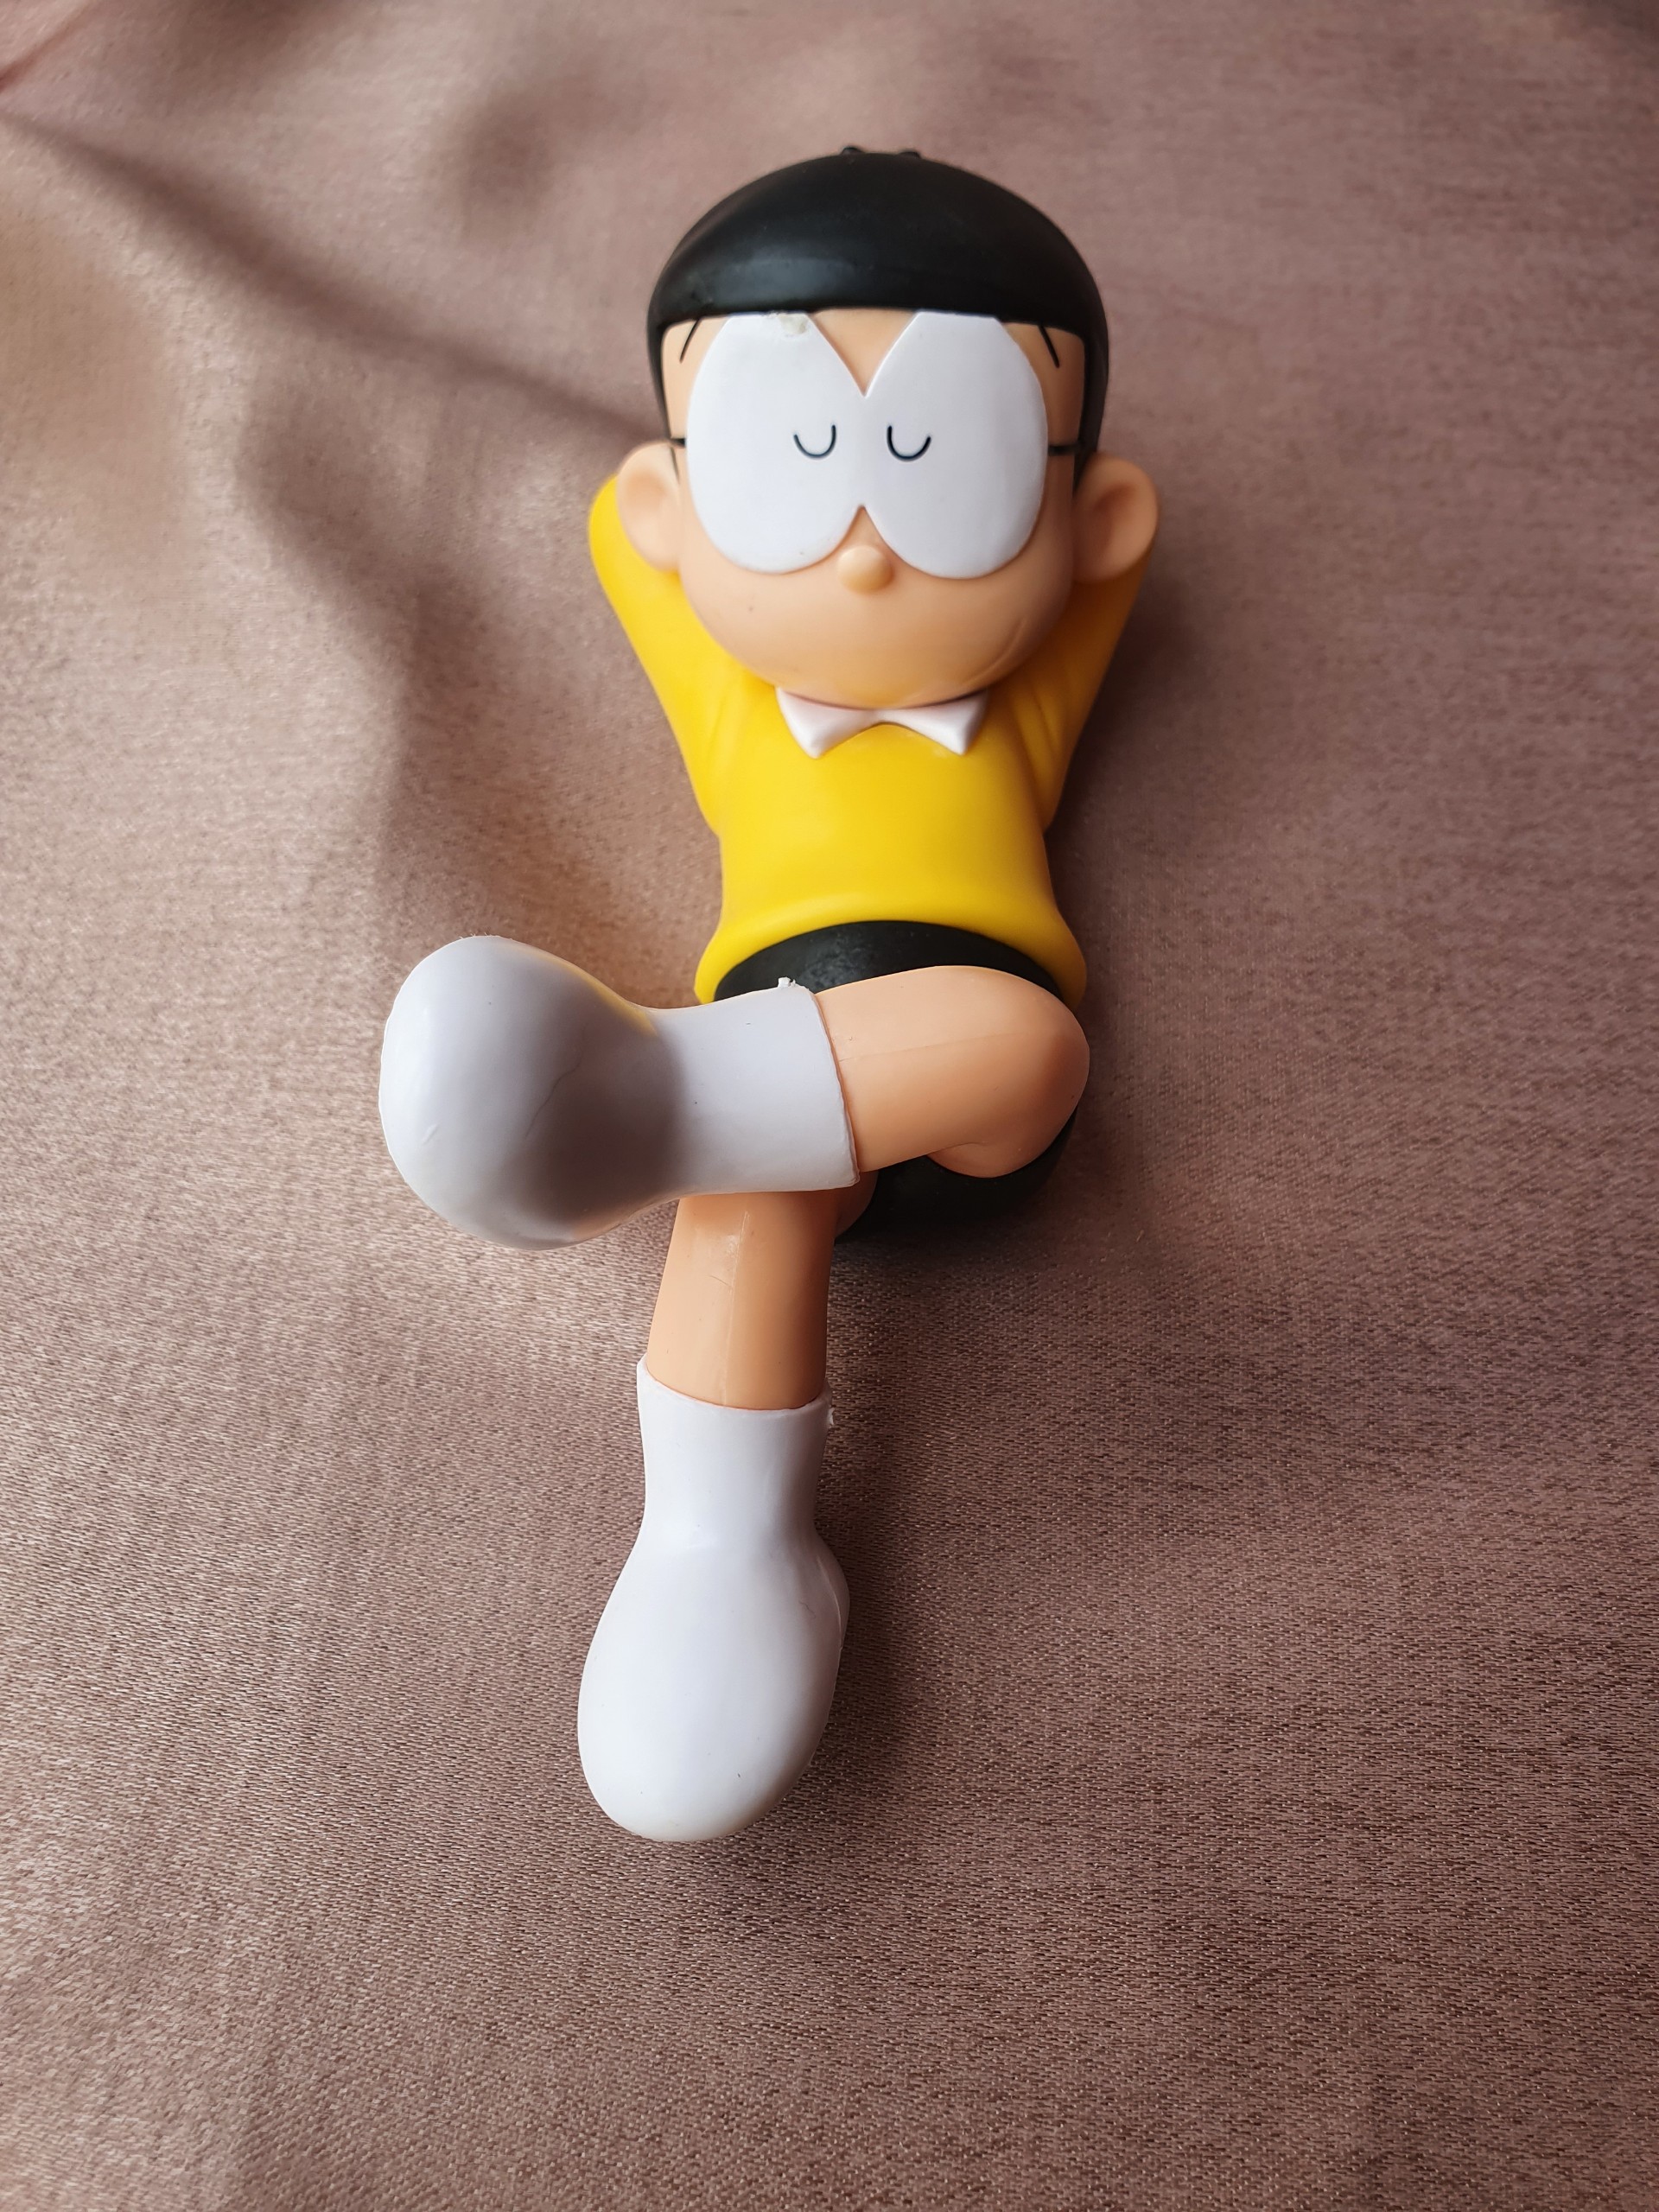 Mô hình Nobita trong năm 2024 được cập nhật với công nghệ 3D mới nhất, đem lại trải nghiệm sống động và chân thật hơn bao giờ hết. Tất cả những chi tiết của Nobita như áo, quần, mặt cười đều được tái hiện vô cùng tinh xảo, giống hệt trong bộ truyện tranh Doraemon nổi tiếng. Chắc chắn bạn sẽ muốn sở hữu ngay một chiếc mô hình Nobita đó!